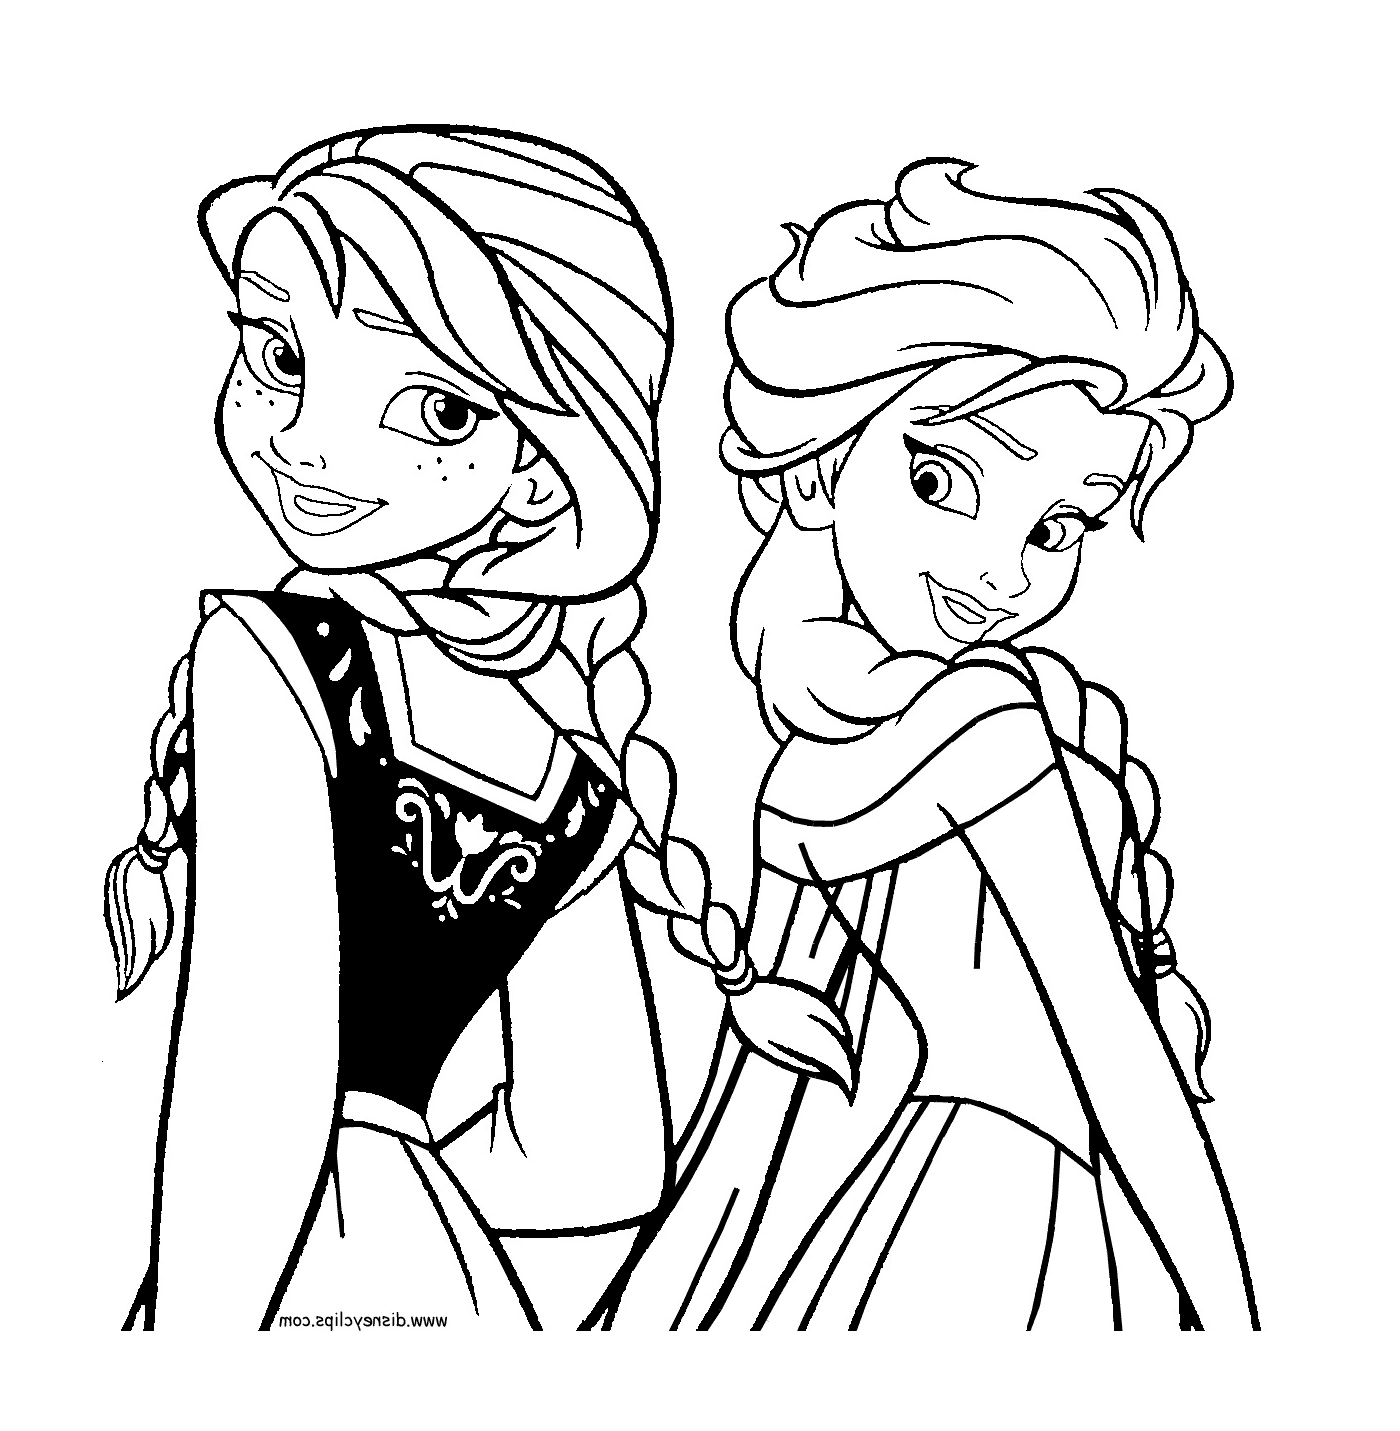   Elsa et Anna de La Reine des neiges 